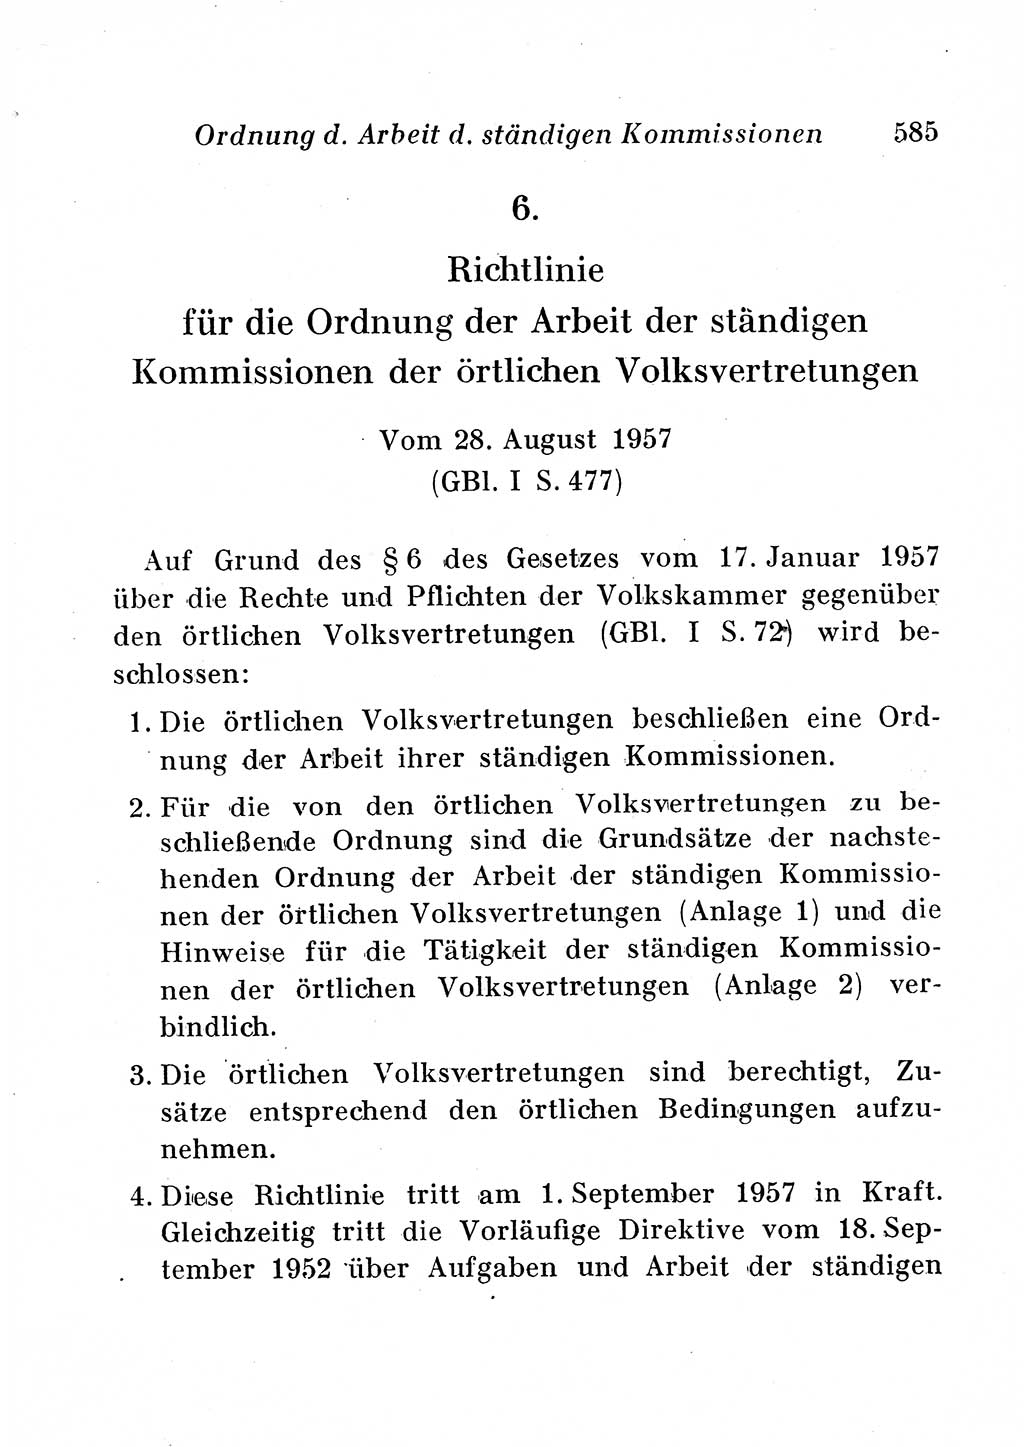 Staats- und verwaltungsrechtliche Gesetze der Deutschen Demokratischen Republik (DDR) 1958, Seite 585 (StVerwR Ges. DDR 1958, S. 585)